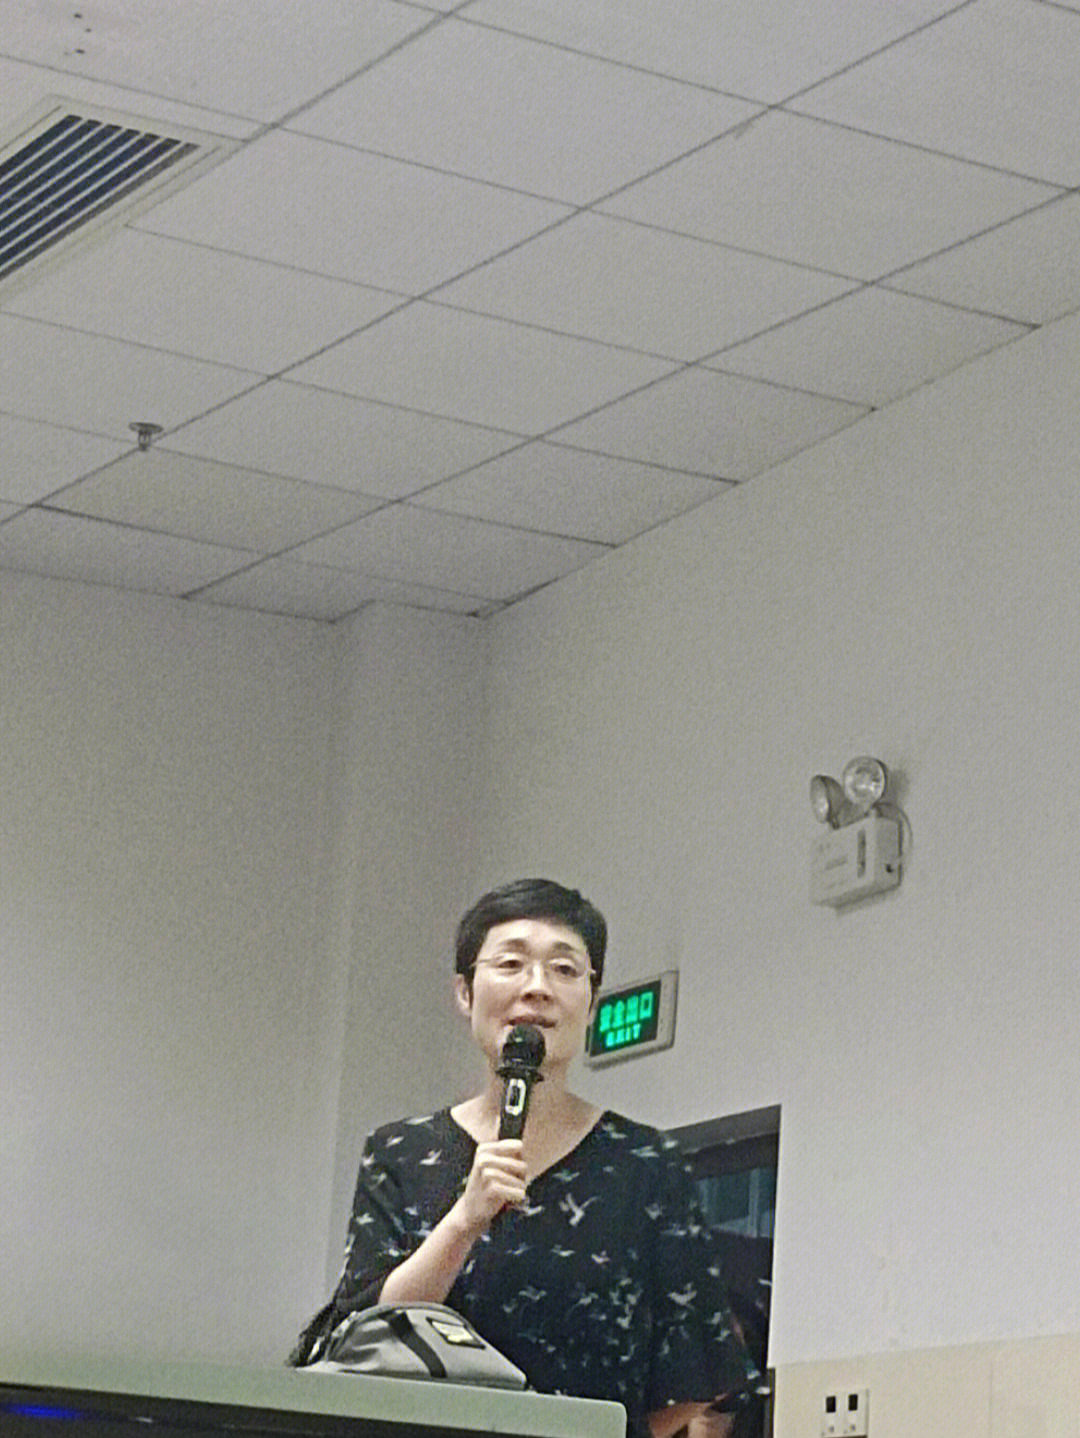 刘晓燕英语老师老公图片